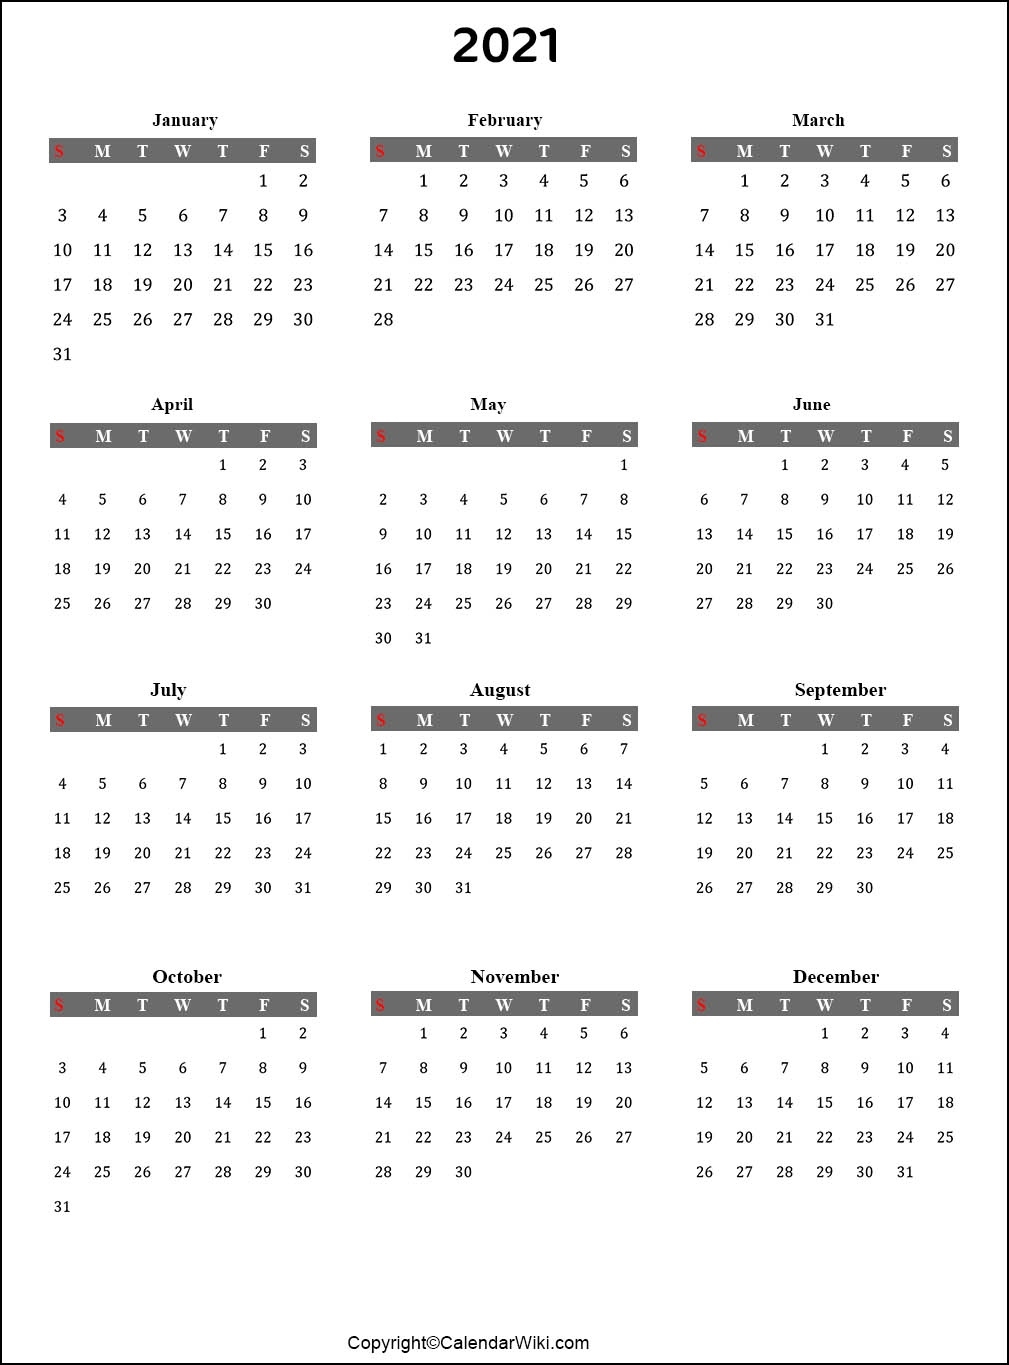 2021 Calendar - Calendarwiki View Calendar Of December 2021